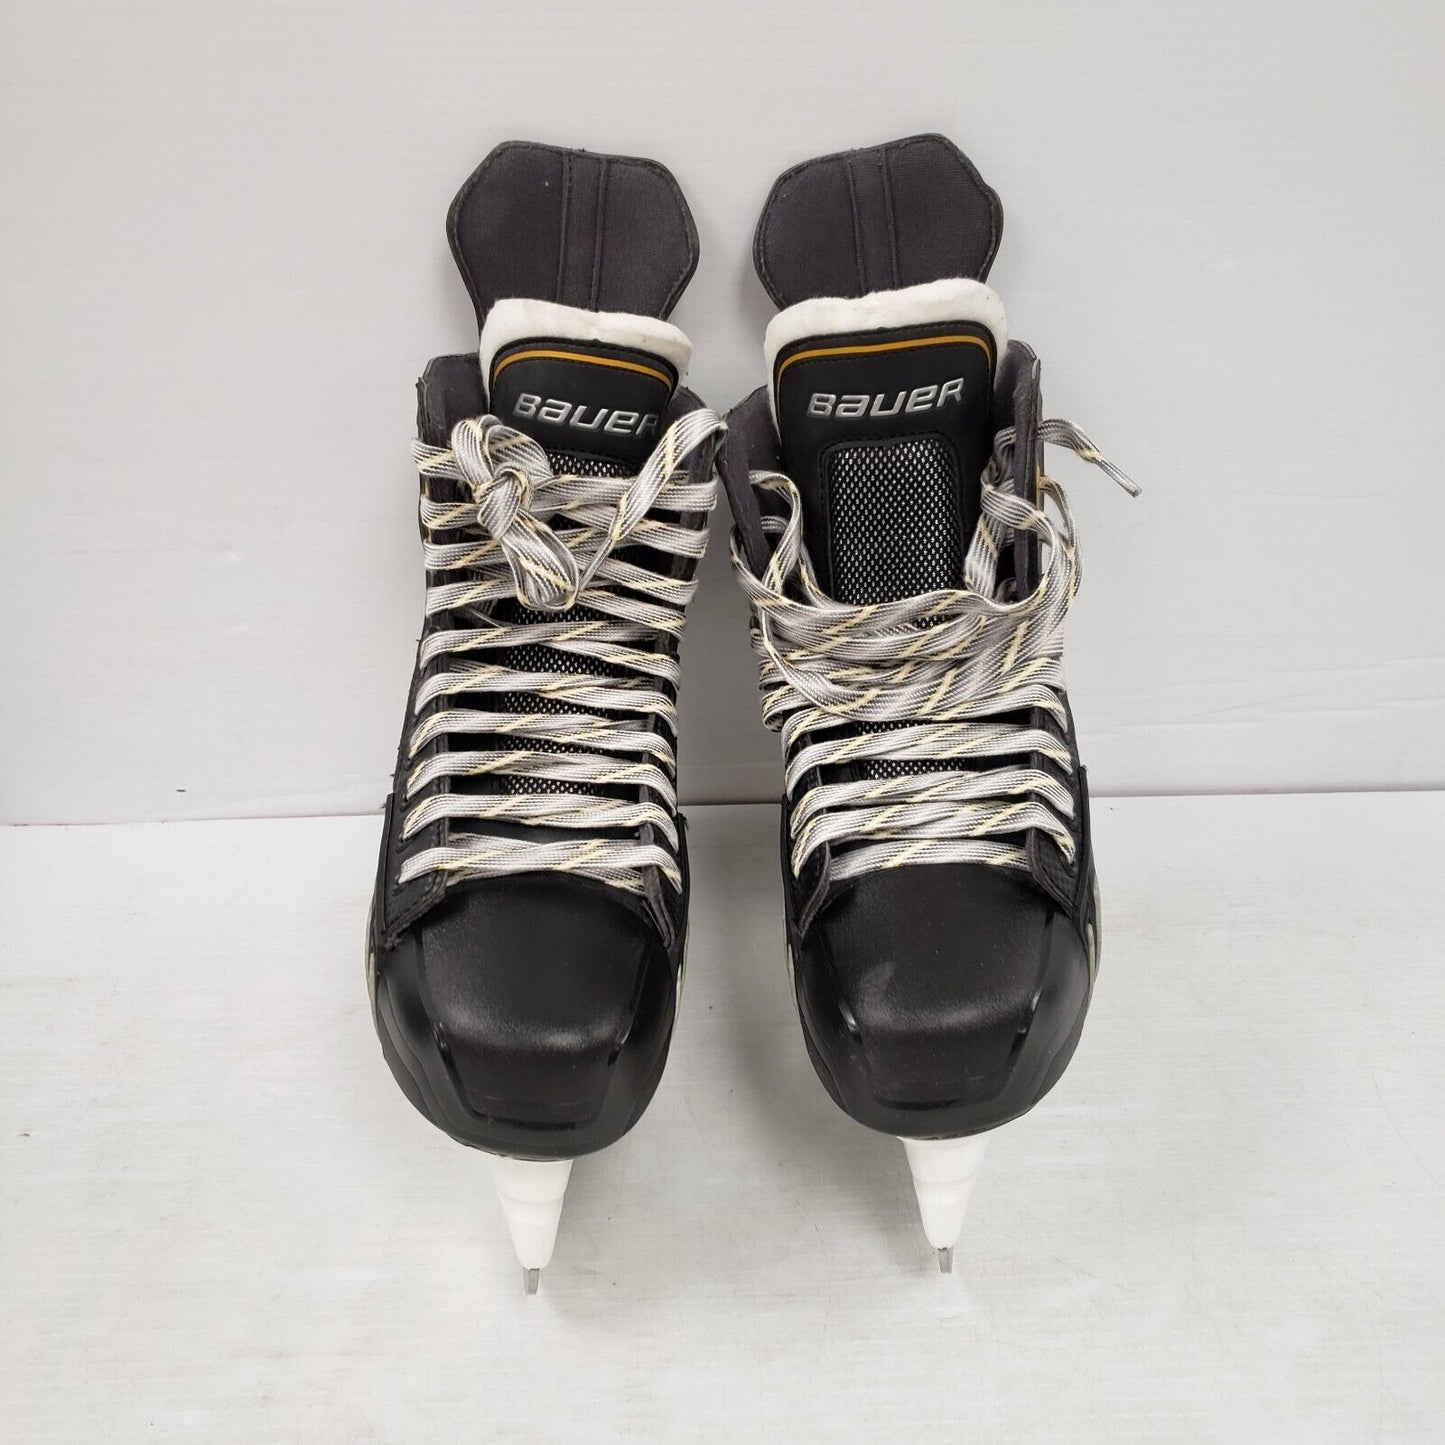 (40195-1) Reebok Supreme One Skates - Size 8